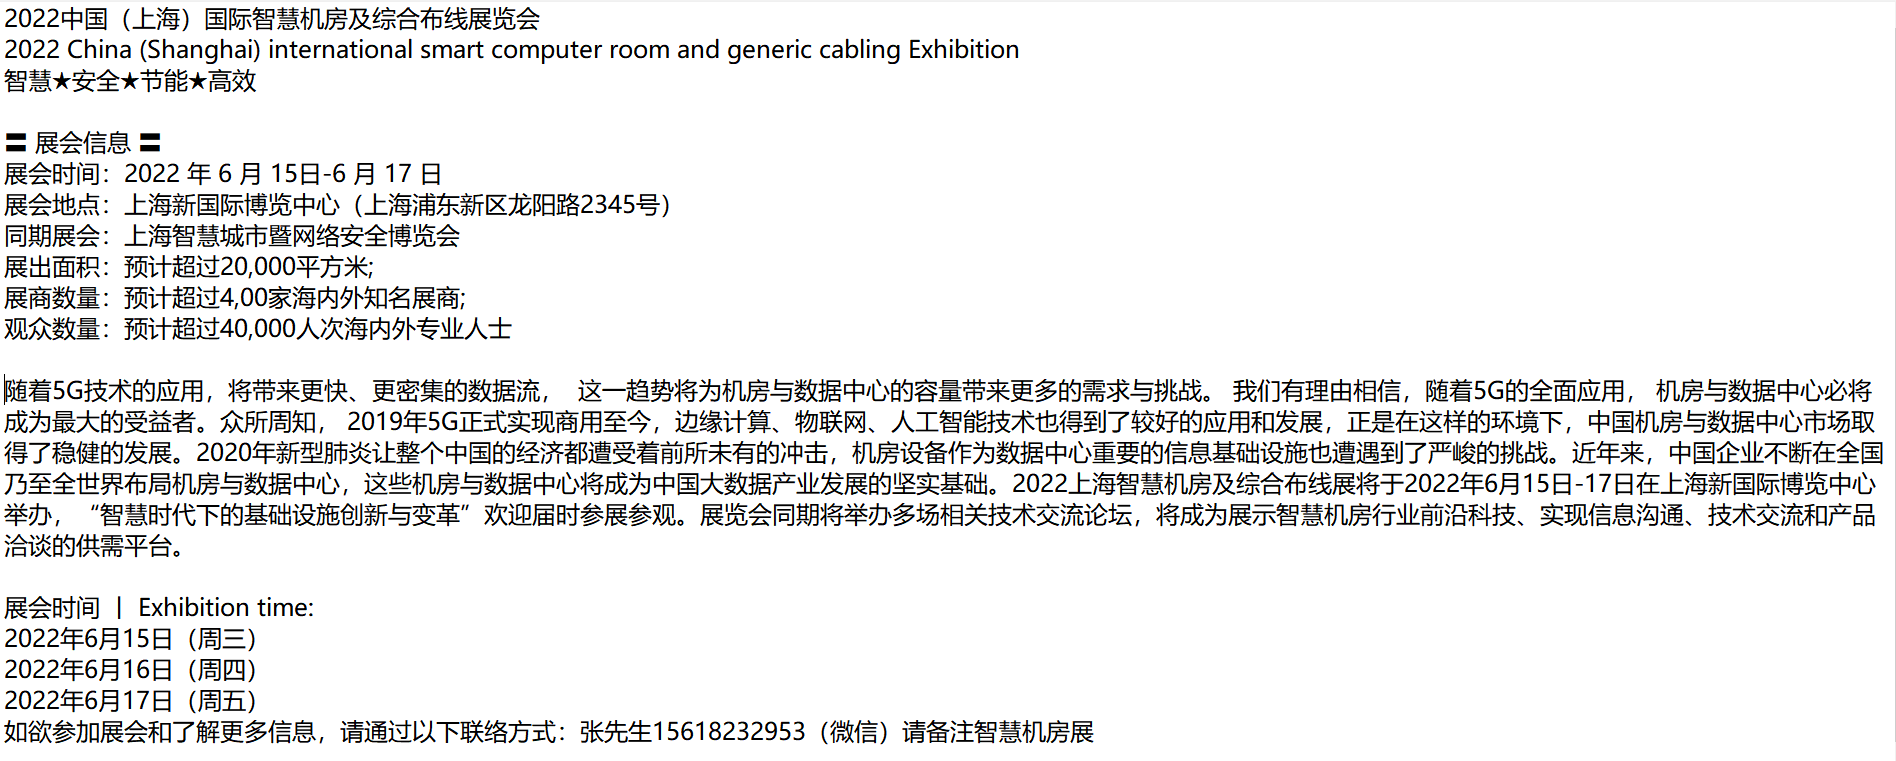 2022中国(上海)国际智慧机房及综合布线展览会